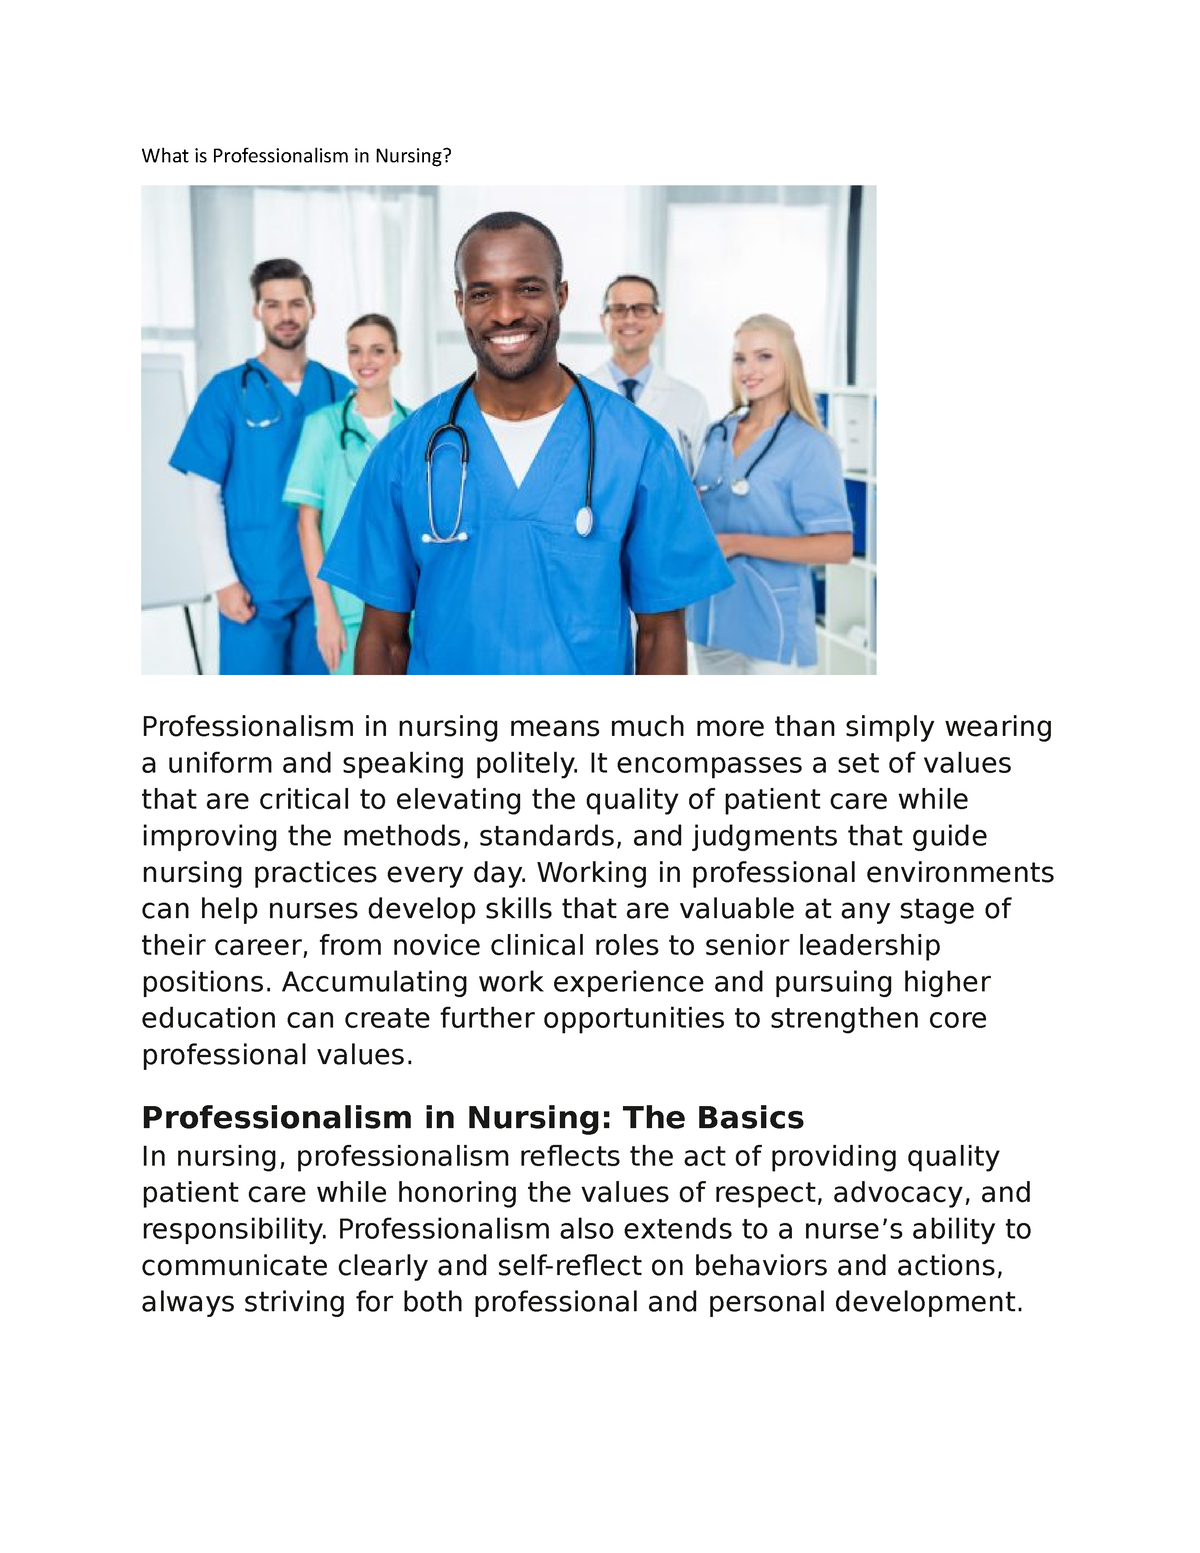 professionalism in nursing essay